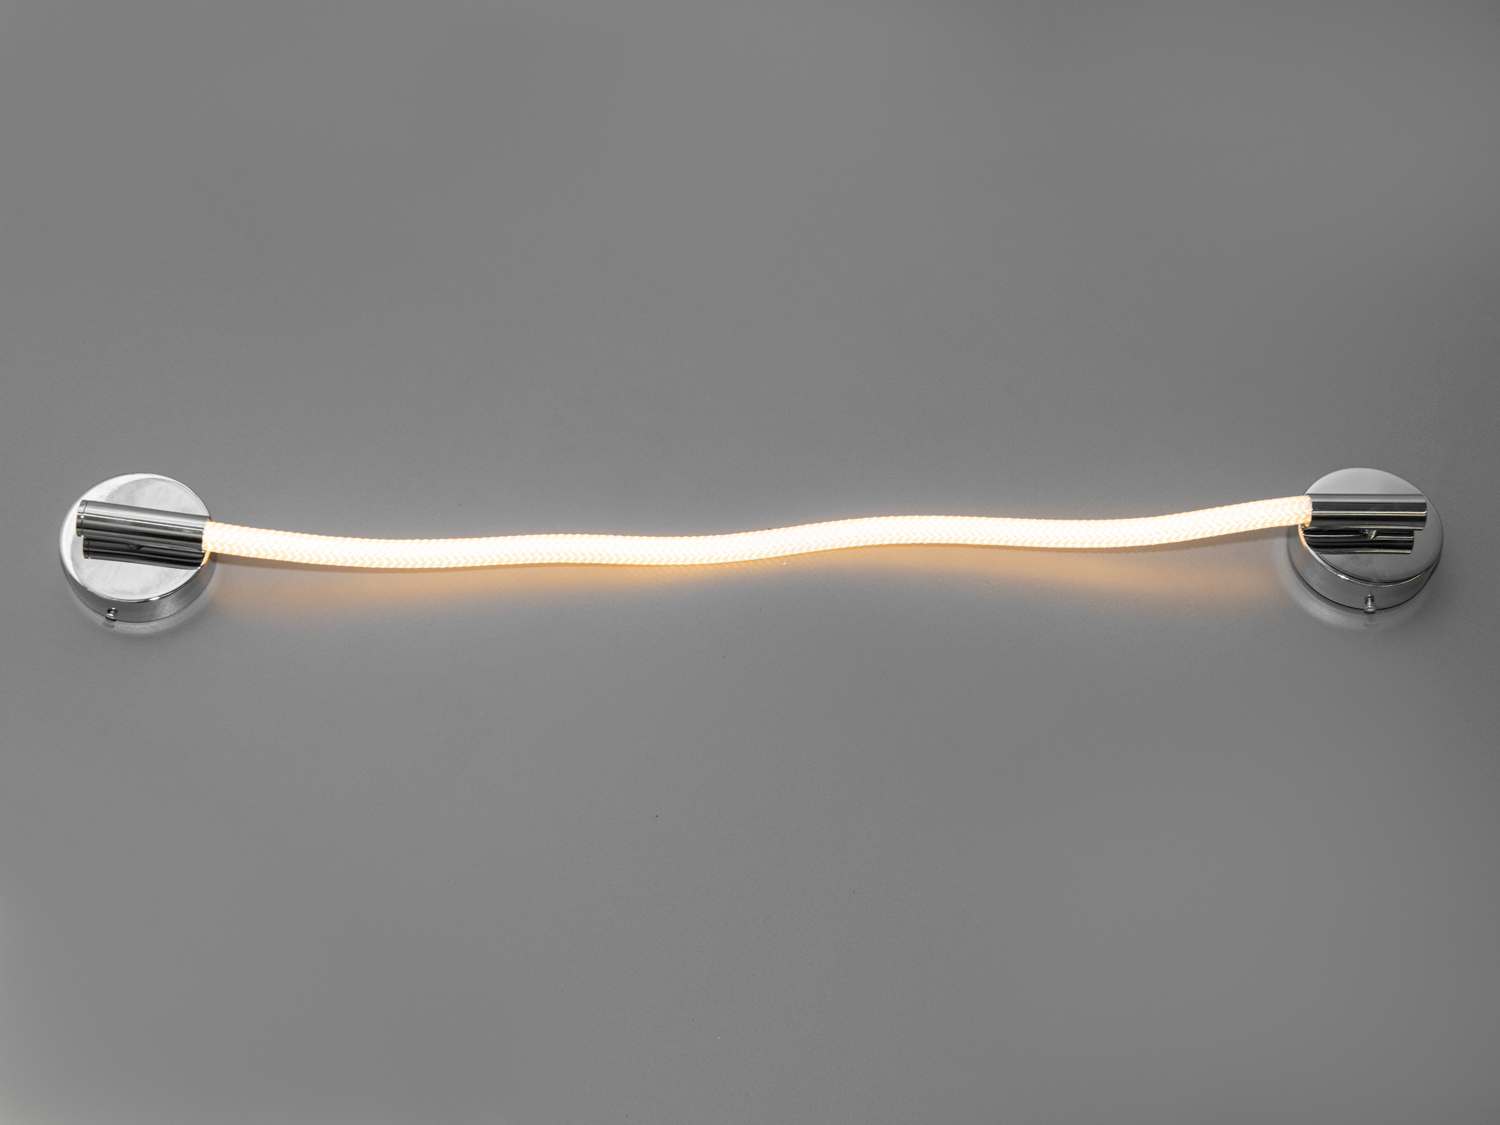 Сучасний, модний світлодіодний світильник шланг, потужністю 10Вт, стильного хромового кольоруСветодиодные бра, Светильники LED, Потолочные, Серия 